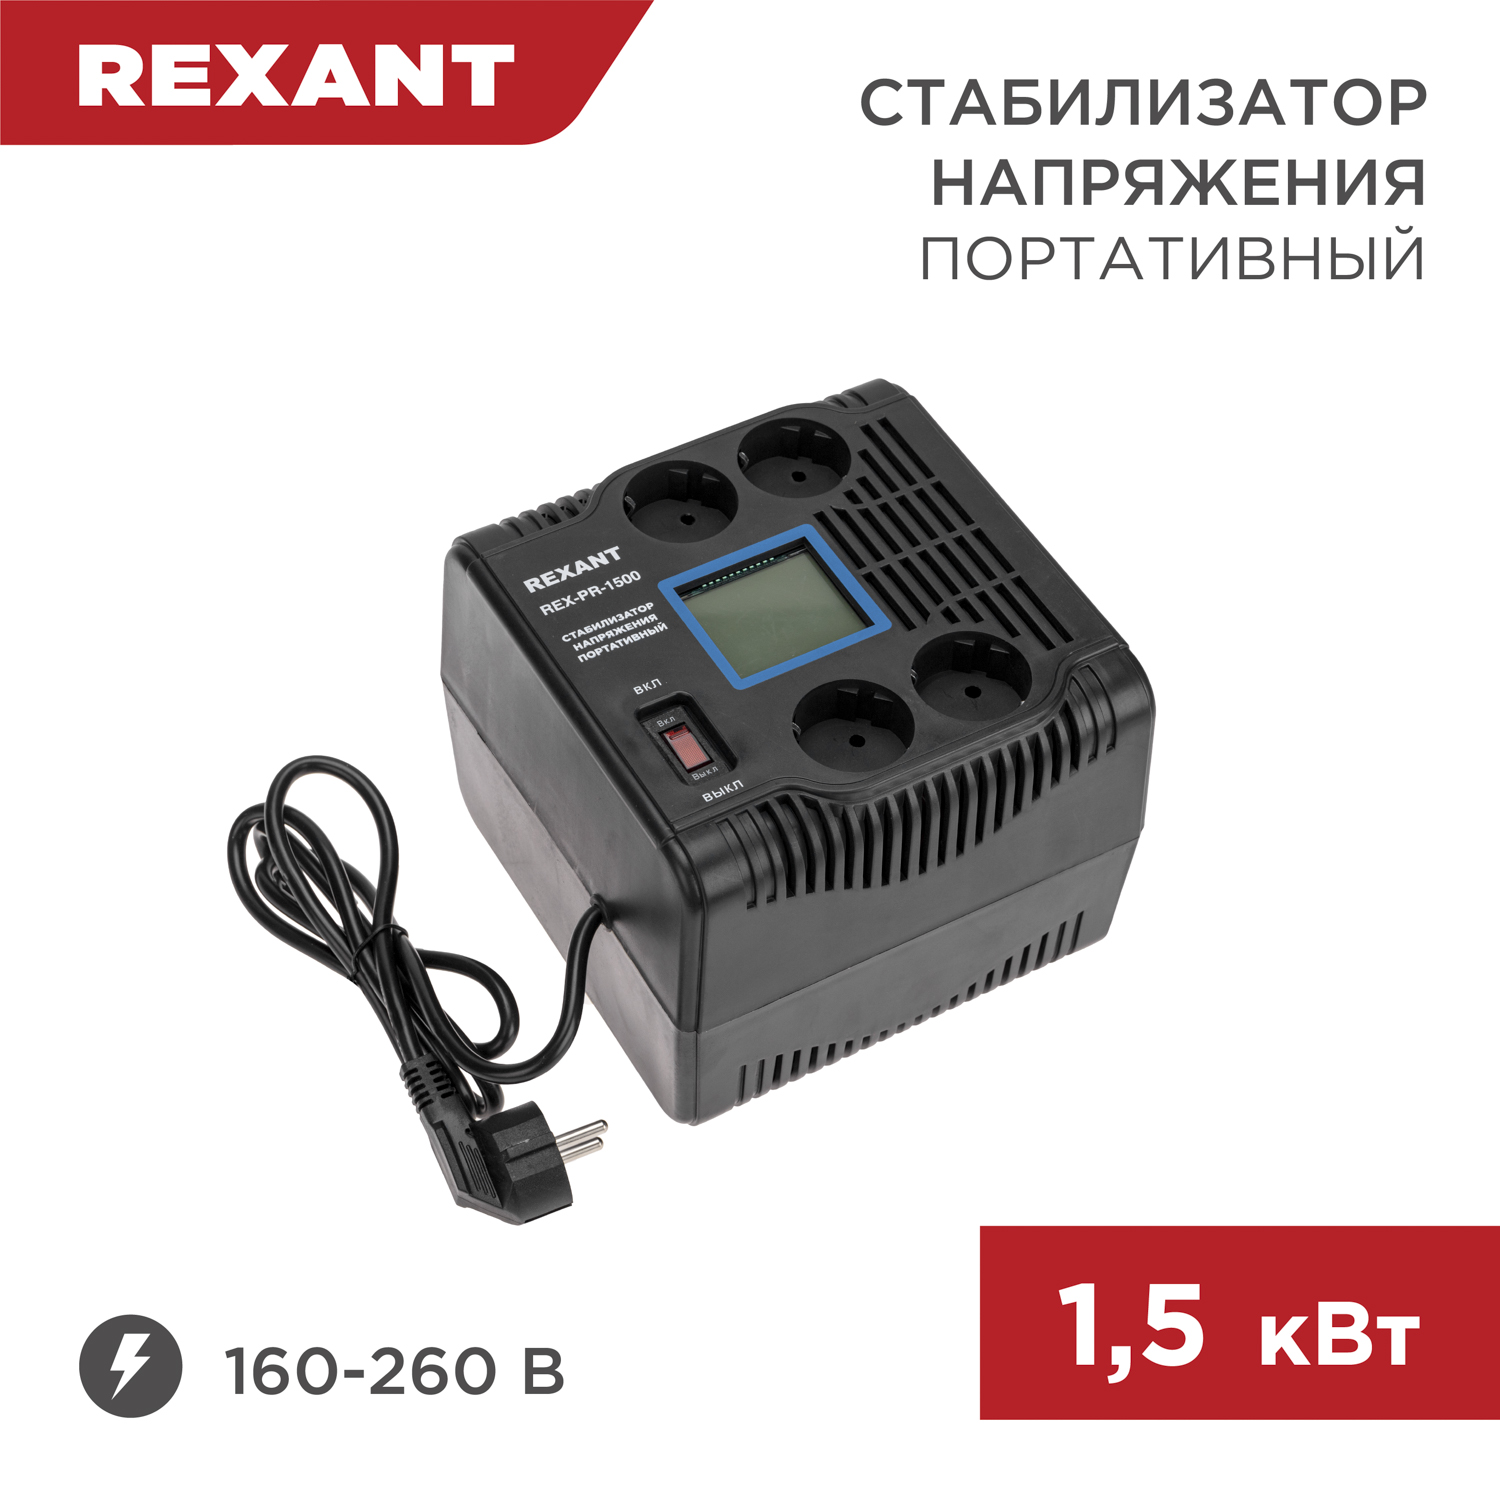 Стабилизатор напряжения портативный REXANT REX-PR-1500 11-5031 стабилизатор напряжения портативный rexant rex pr 1500 11 5031